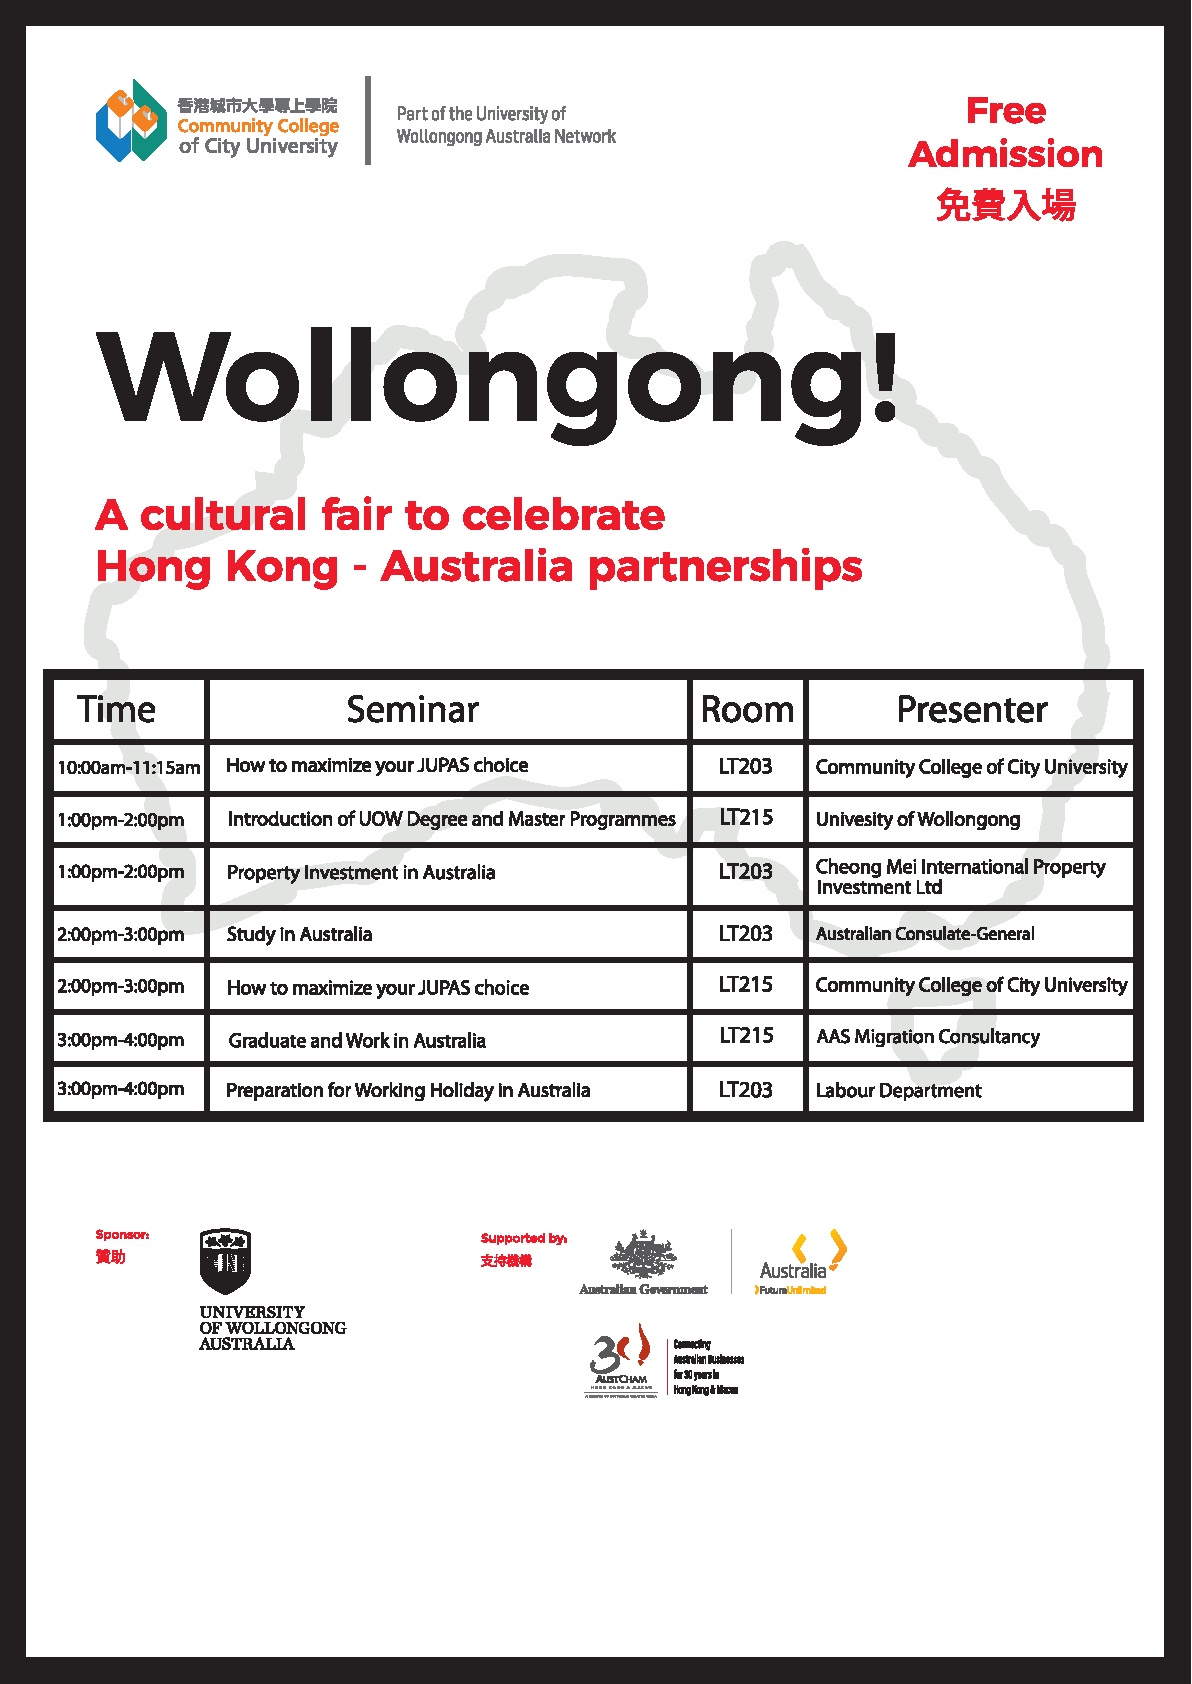 香港城市大學專上學院「Wollongong!」博覽會 - 澳洲工作假期講座圖片2